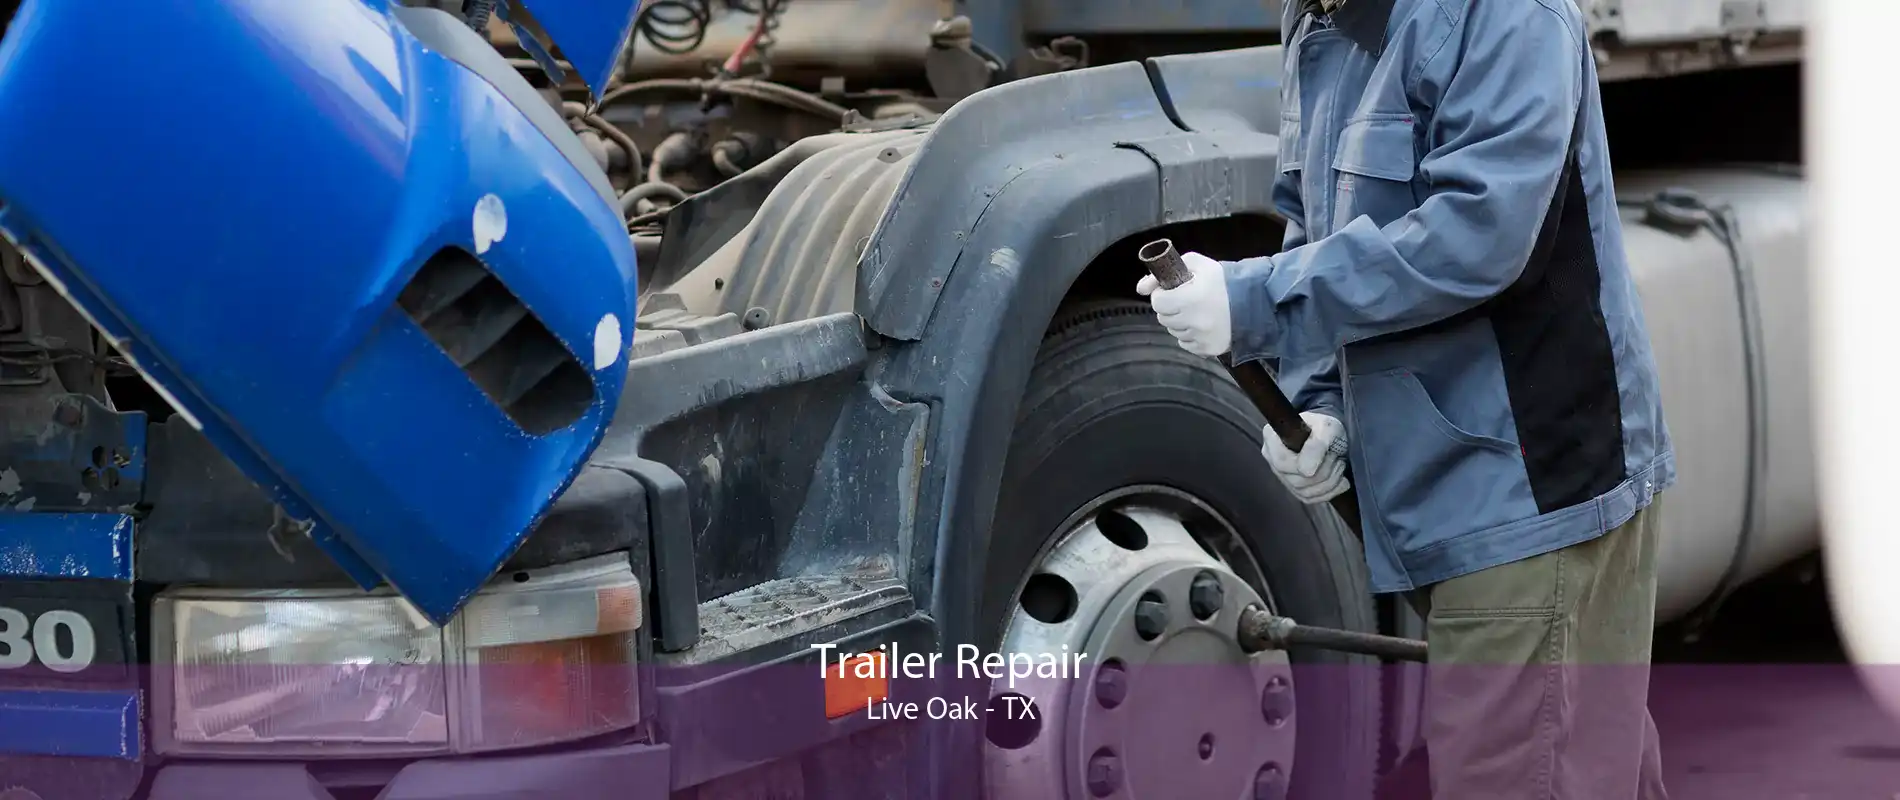 Trailer Repair Live Oak - TX